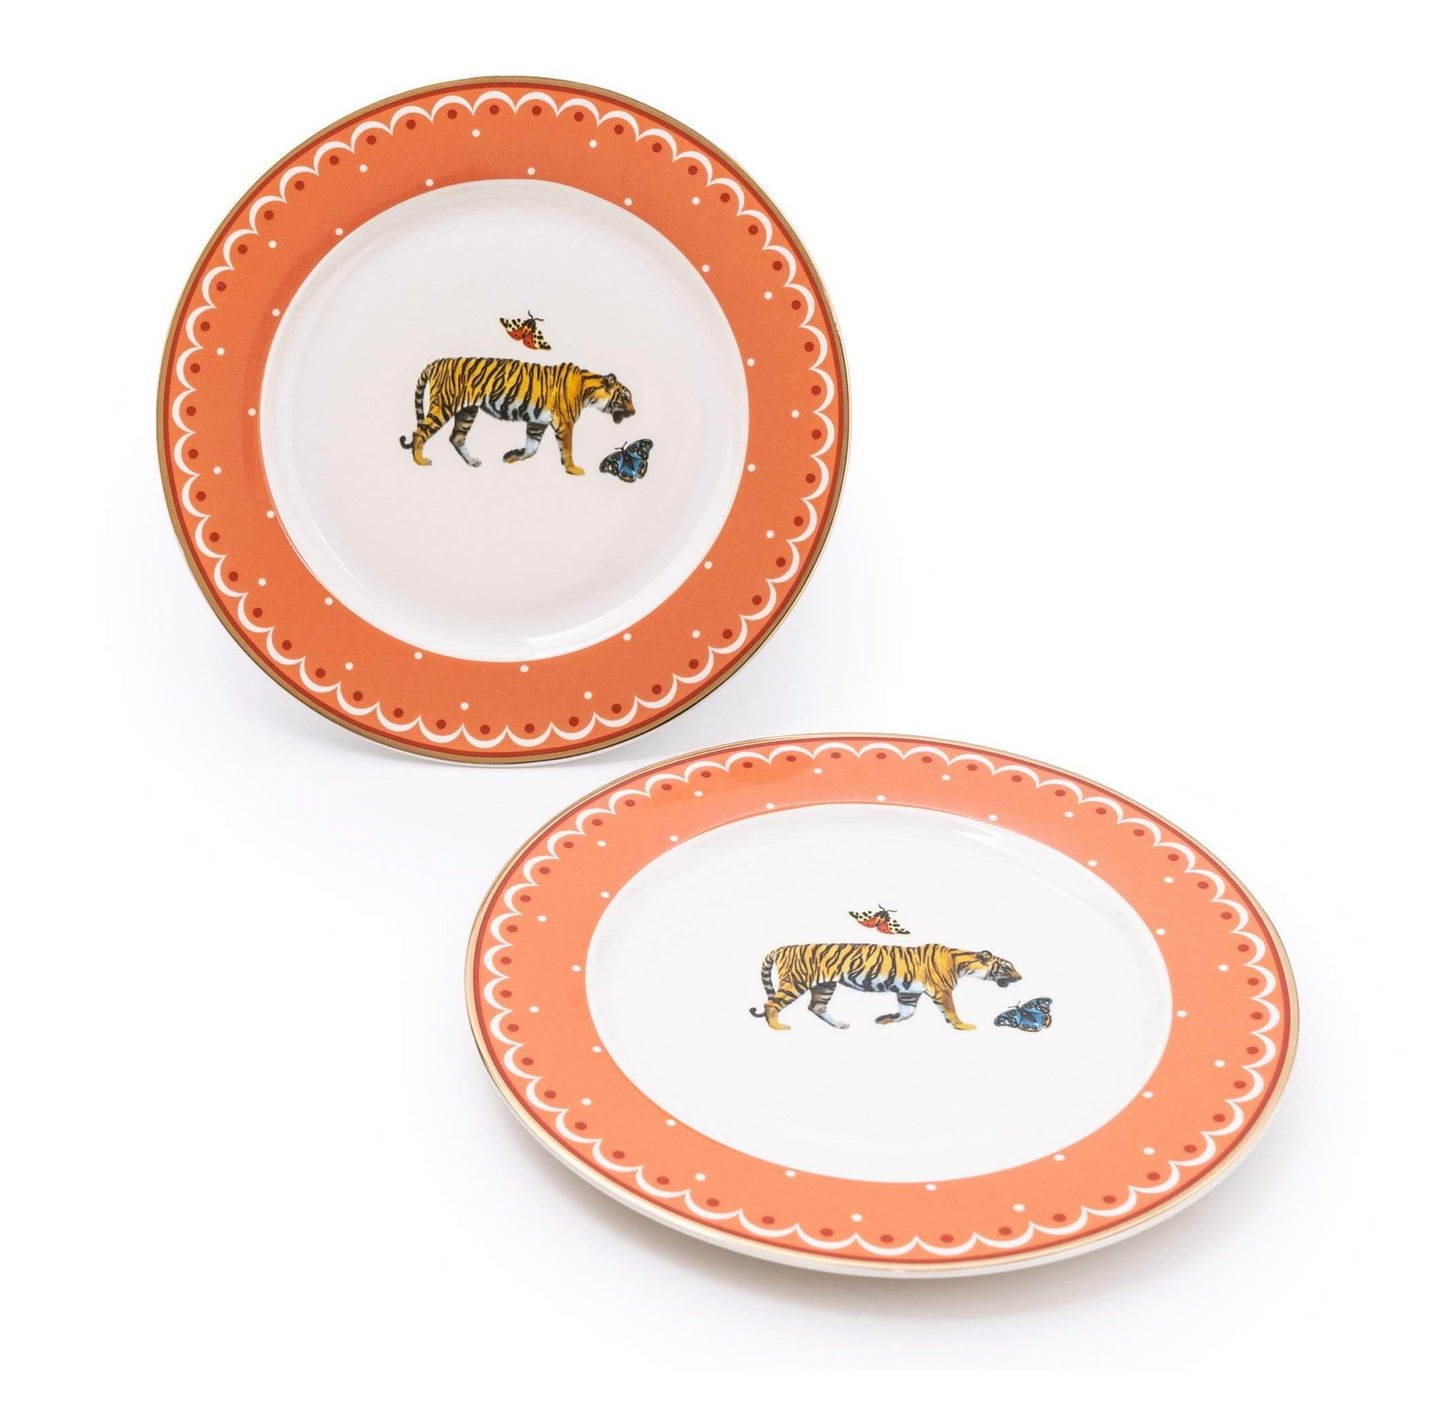 Wild Garden Porcelain Side Plates, Tiger (Set of 2)